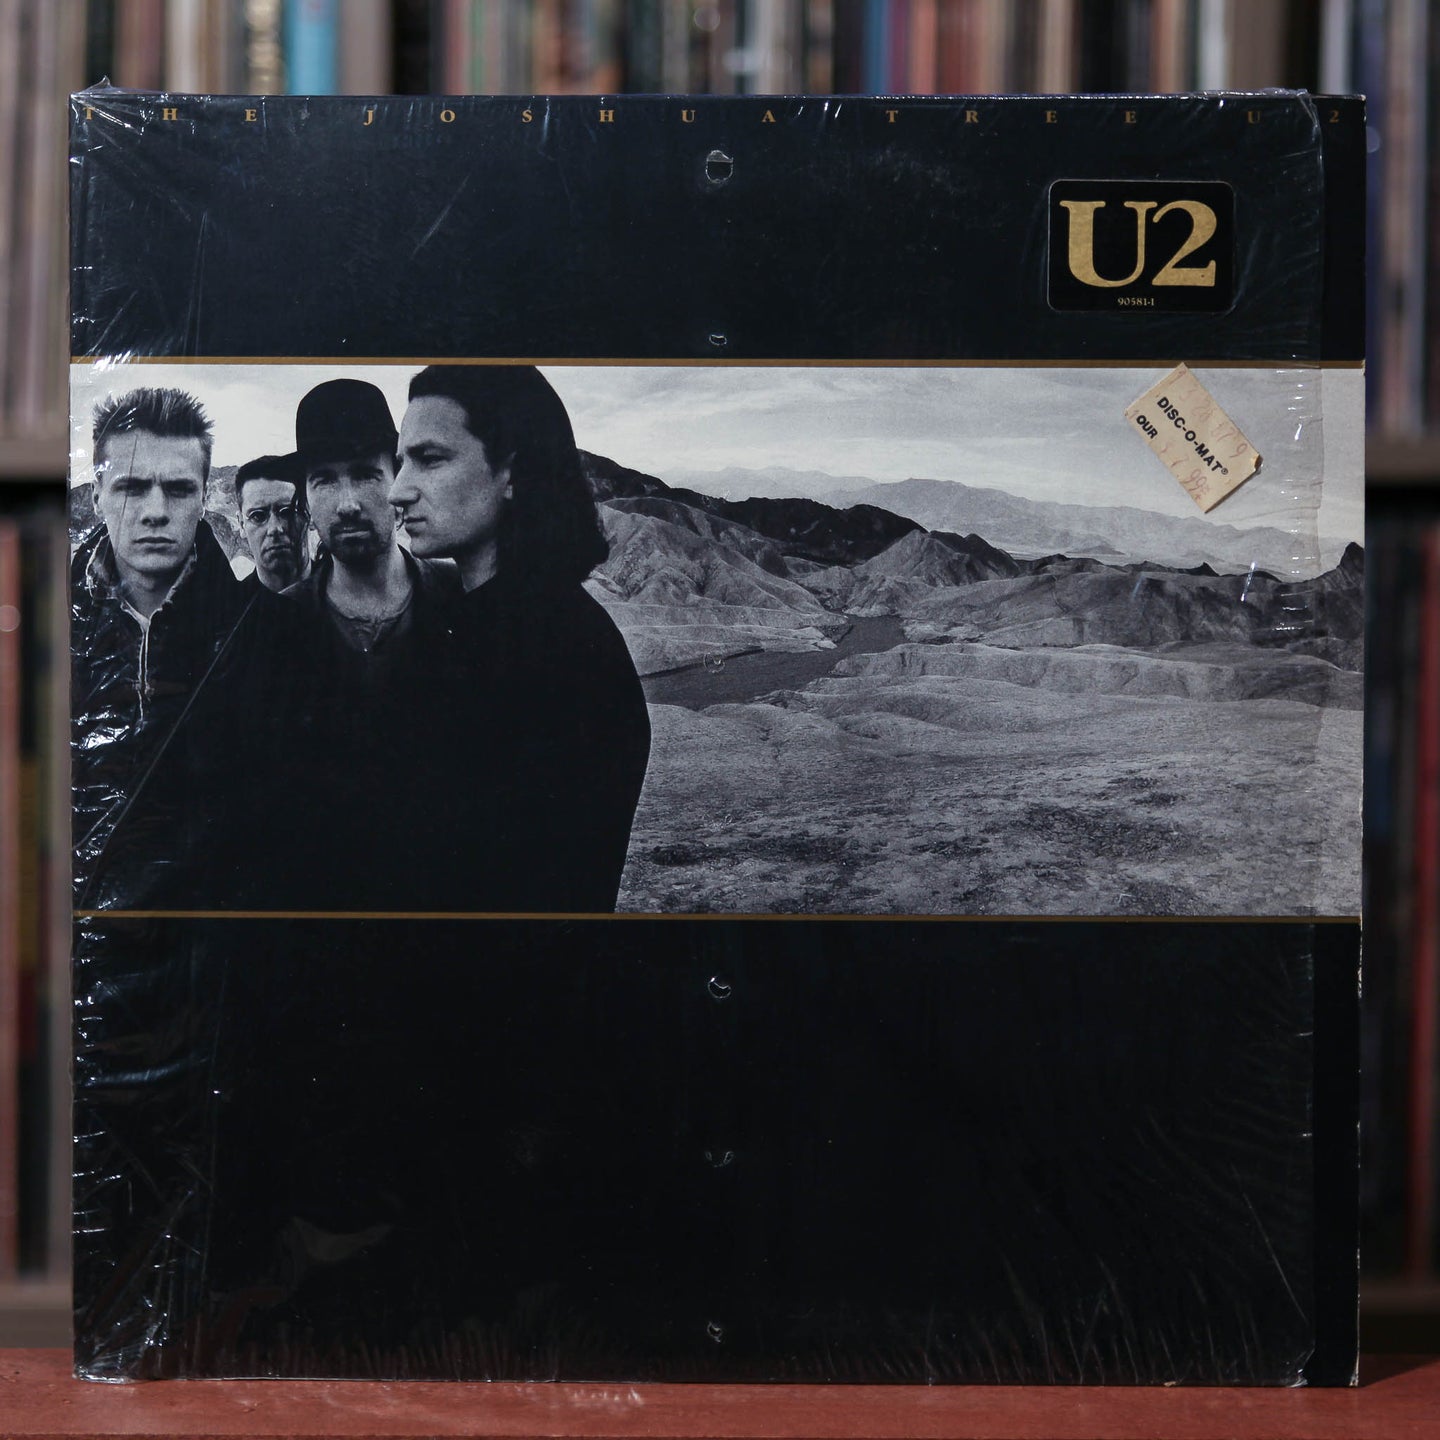 U2 - The Joshua Tree - 1987 Island, VG/VG+